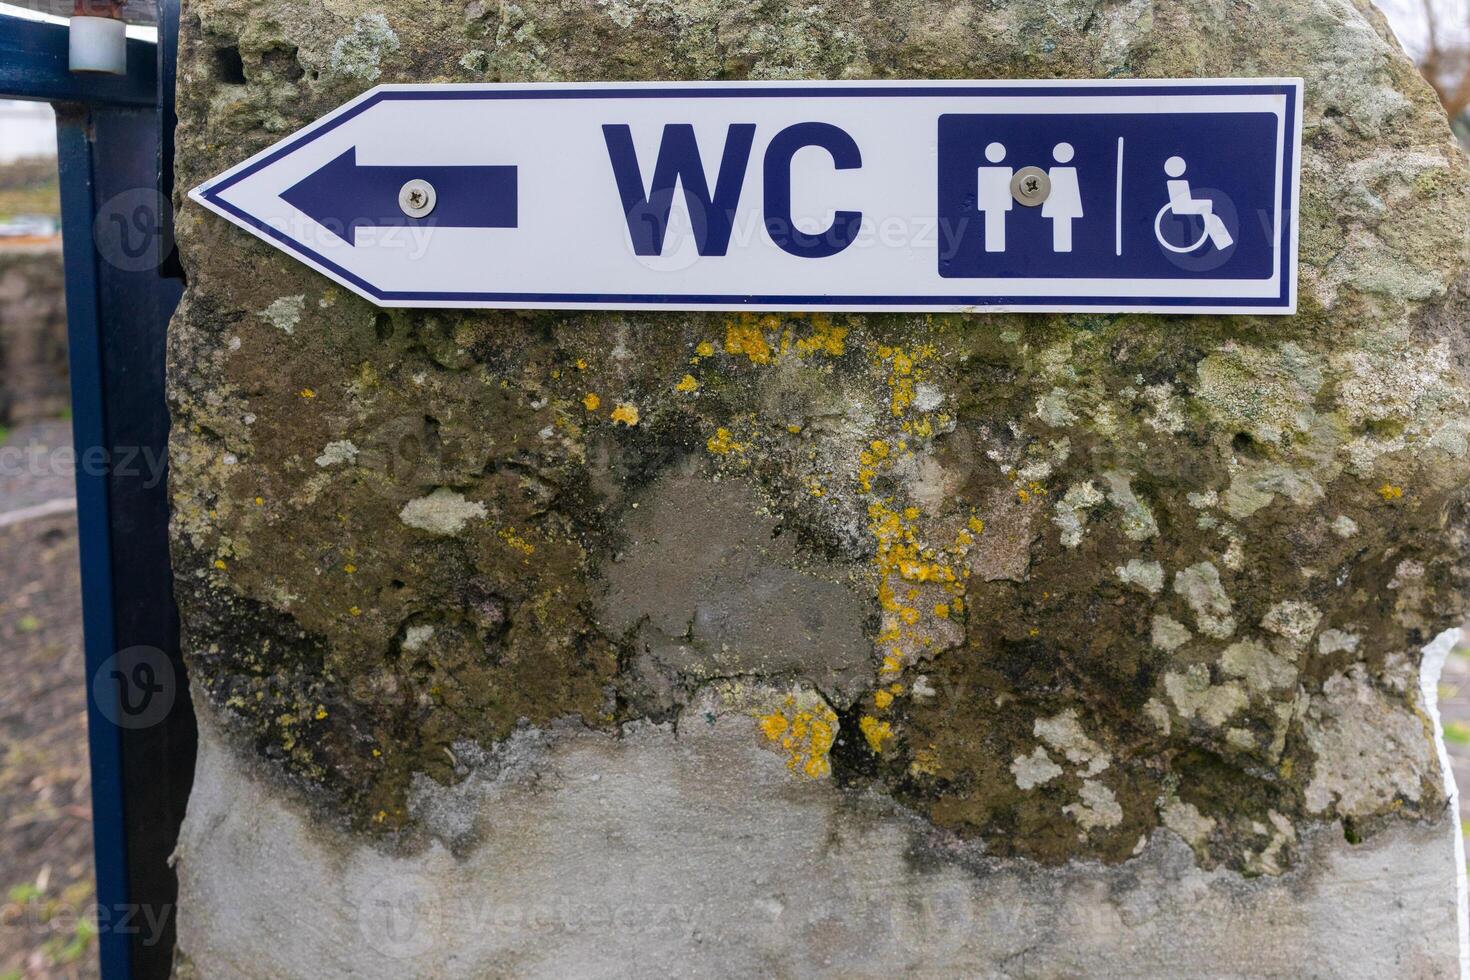 zugänglich Toilette Zeichen abbilden beide Standard und deaktiviert Toilette Symbole, Ideal zum Aufnahme . foto